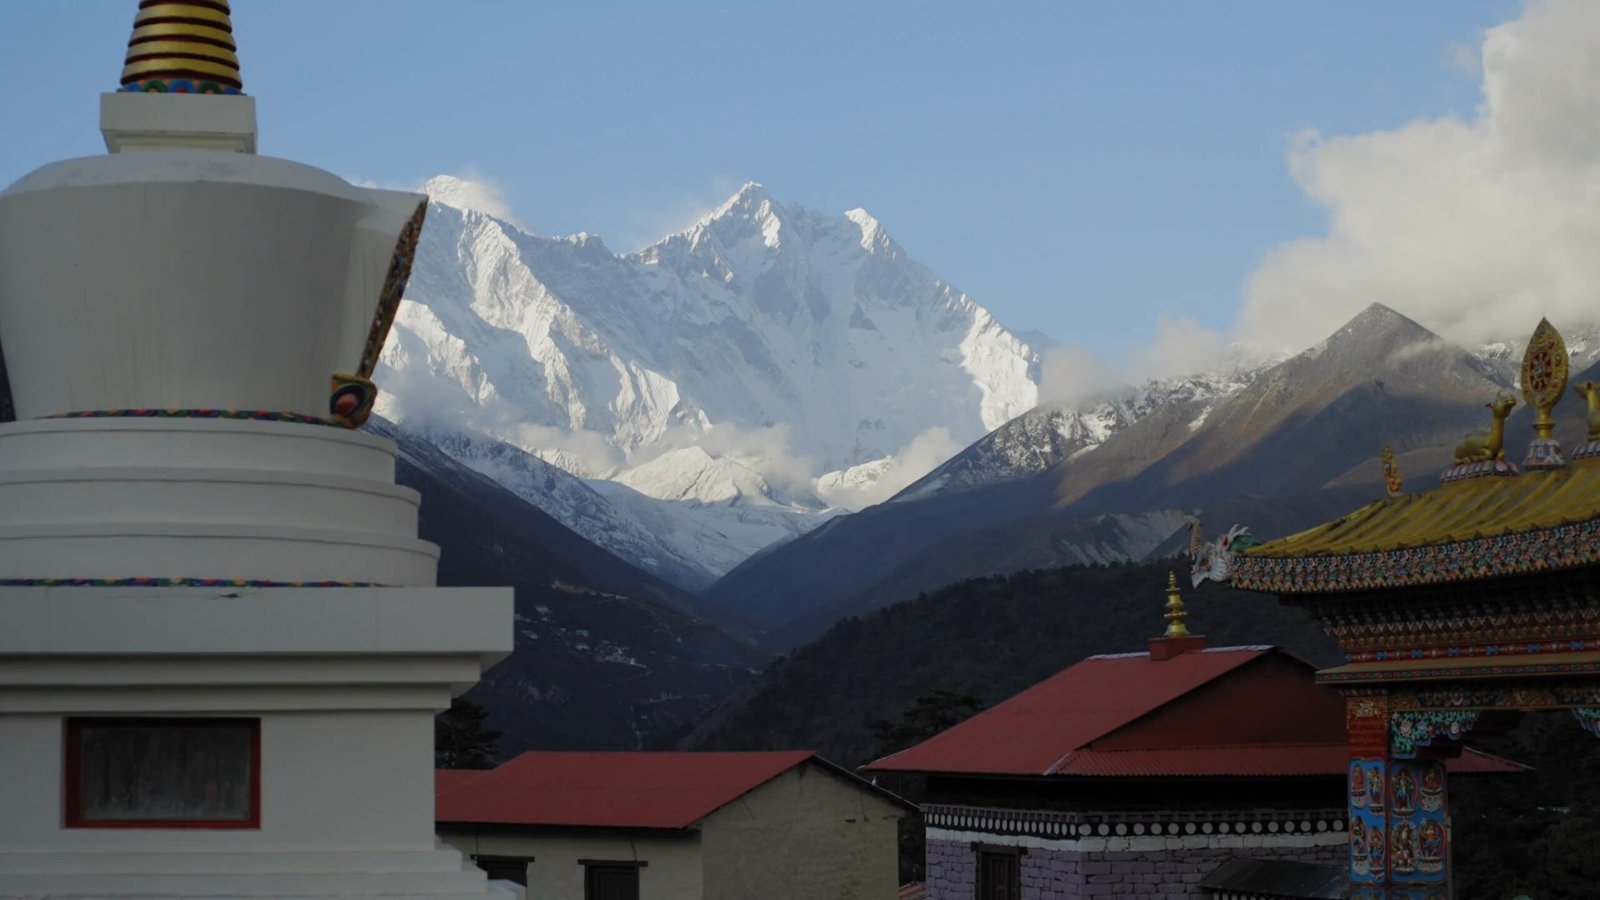 Casas típicas de la zona y al final de estas se ve la cima del Himalaya cubierta de nieve